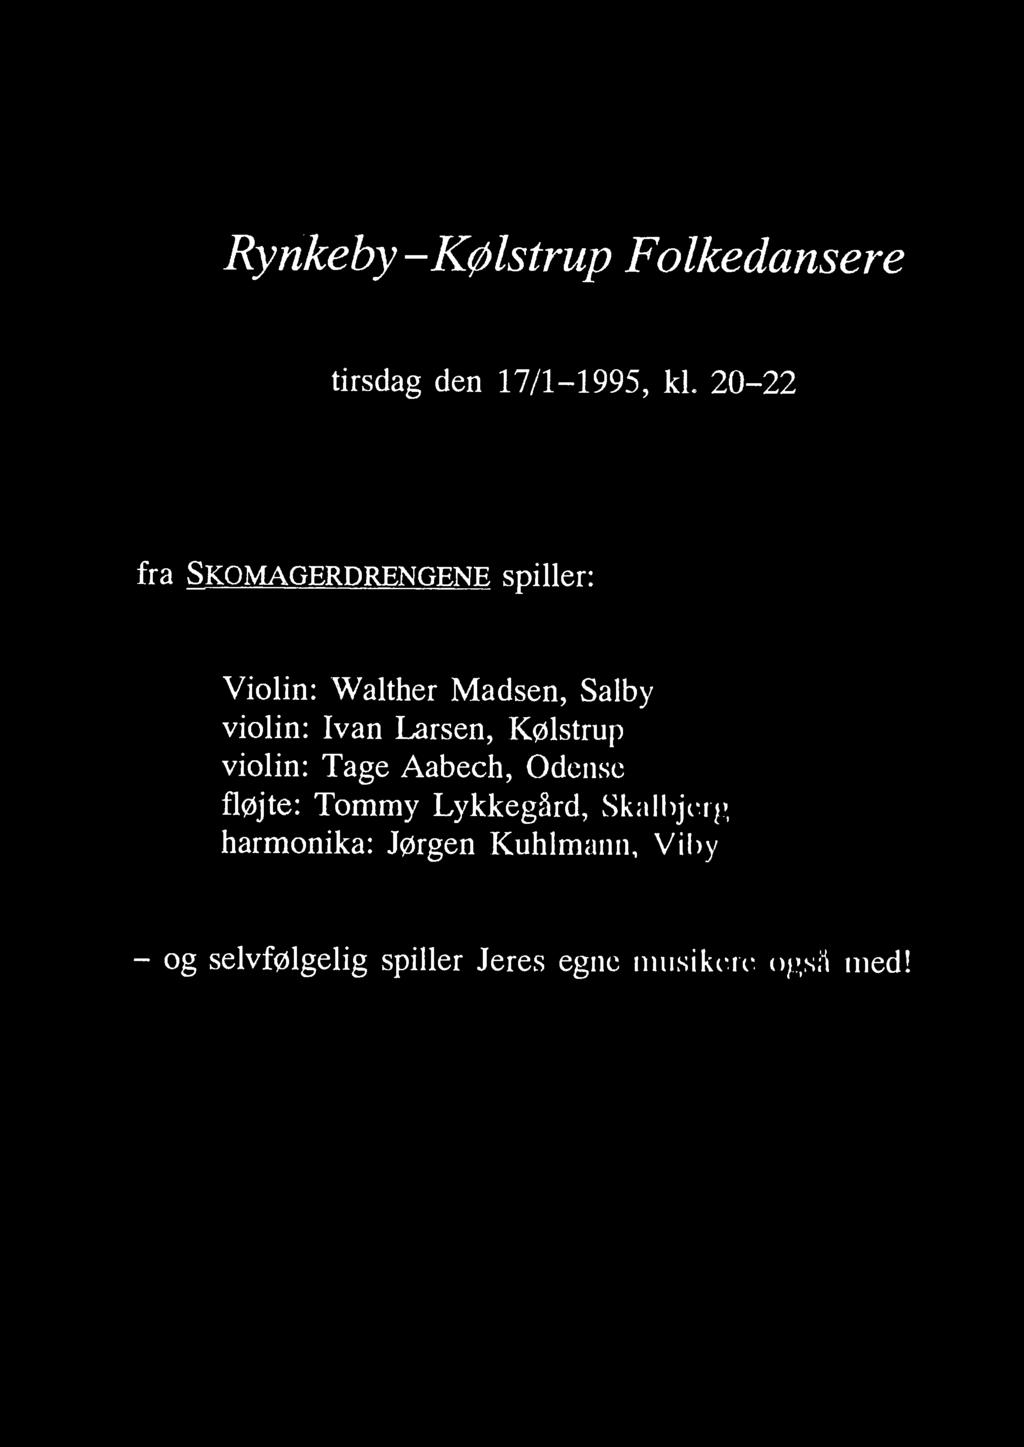 Kølstrup violin: Tage Aabech, Odense fløjte: Tommy Lykkegård, Skalbjerg